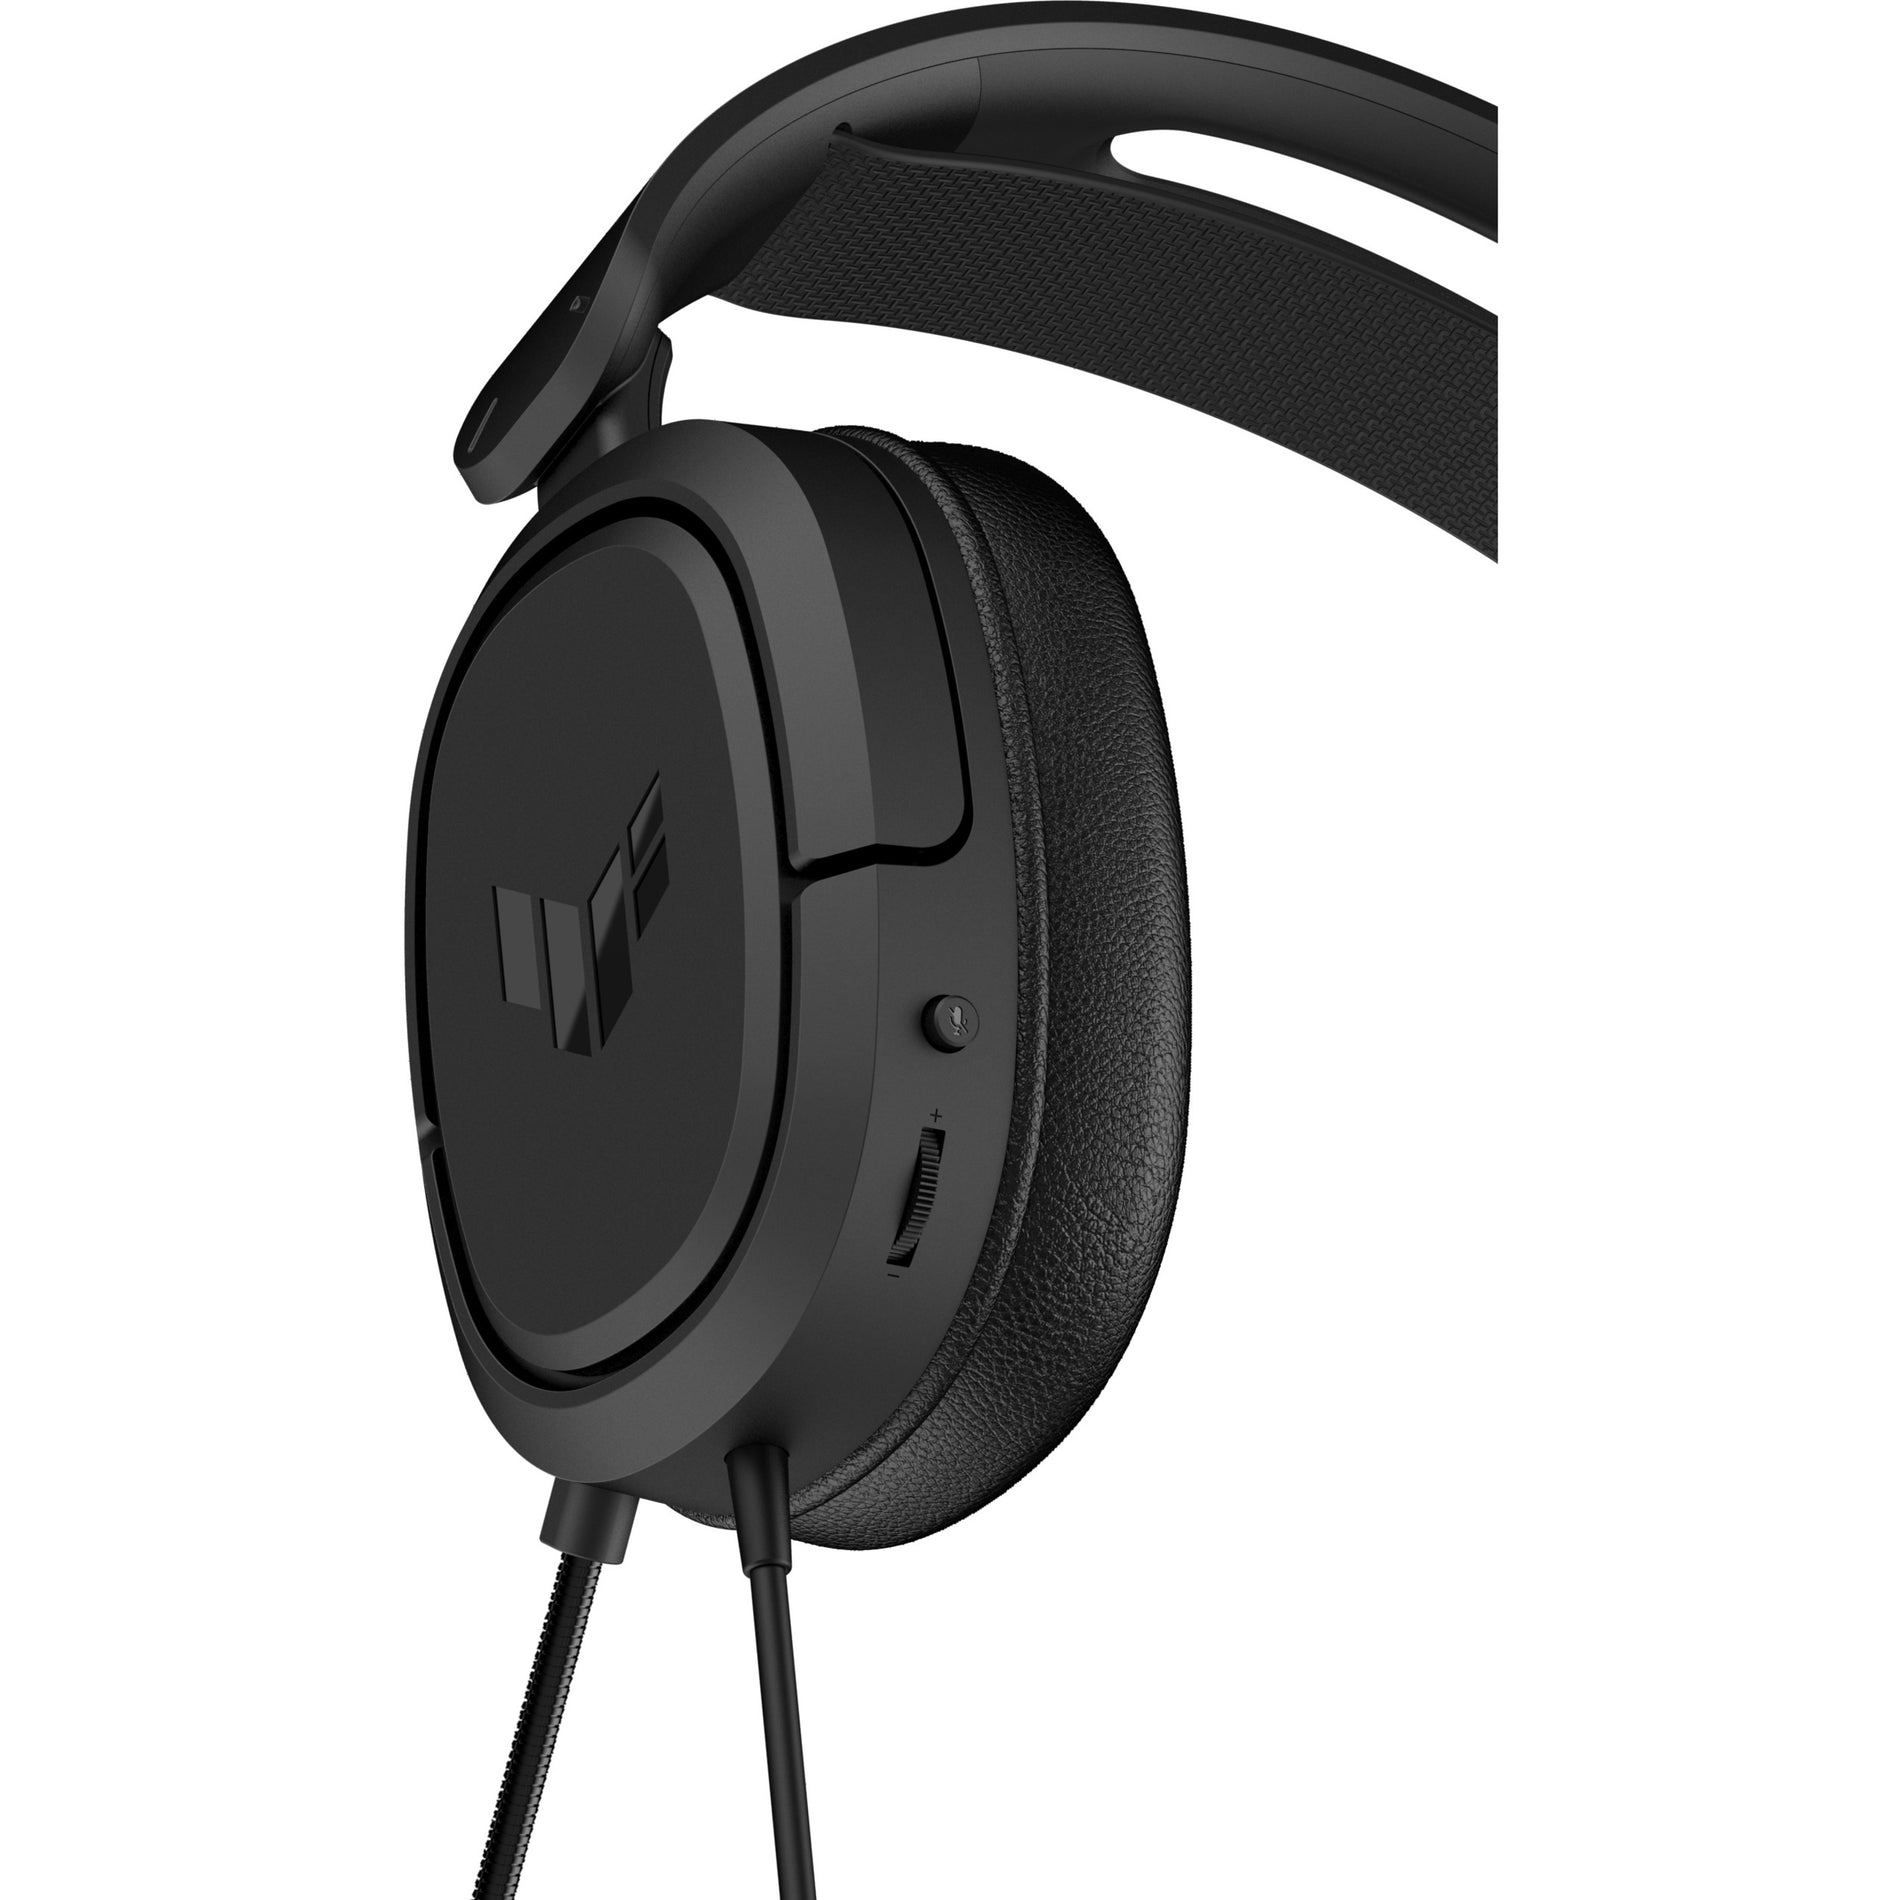 TUF TUFGAMINGDSGUS Gaming H1 Gaming Headset, Deep Bass, Lightweight, 7.1 Surround Sound